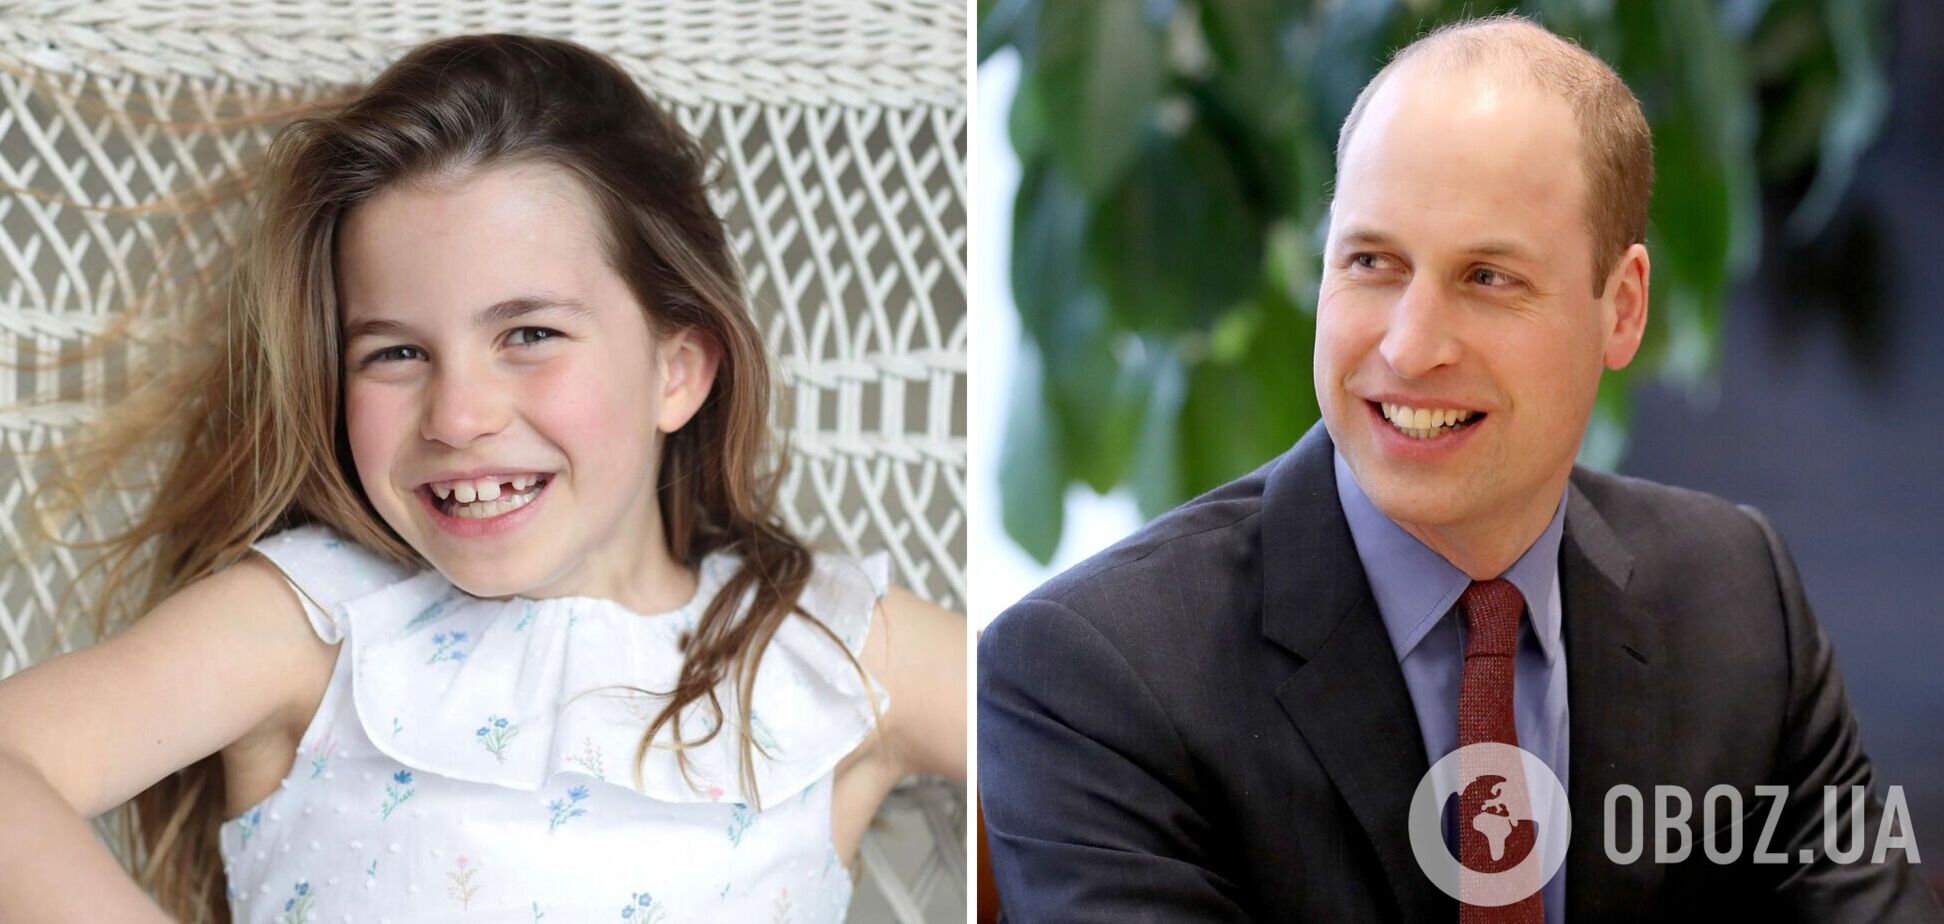 Принцессе Шарлотте — 8: родители показали новое фото именинницы, поражающее сходством девочки с папой